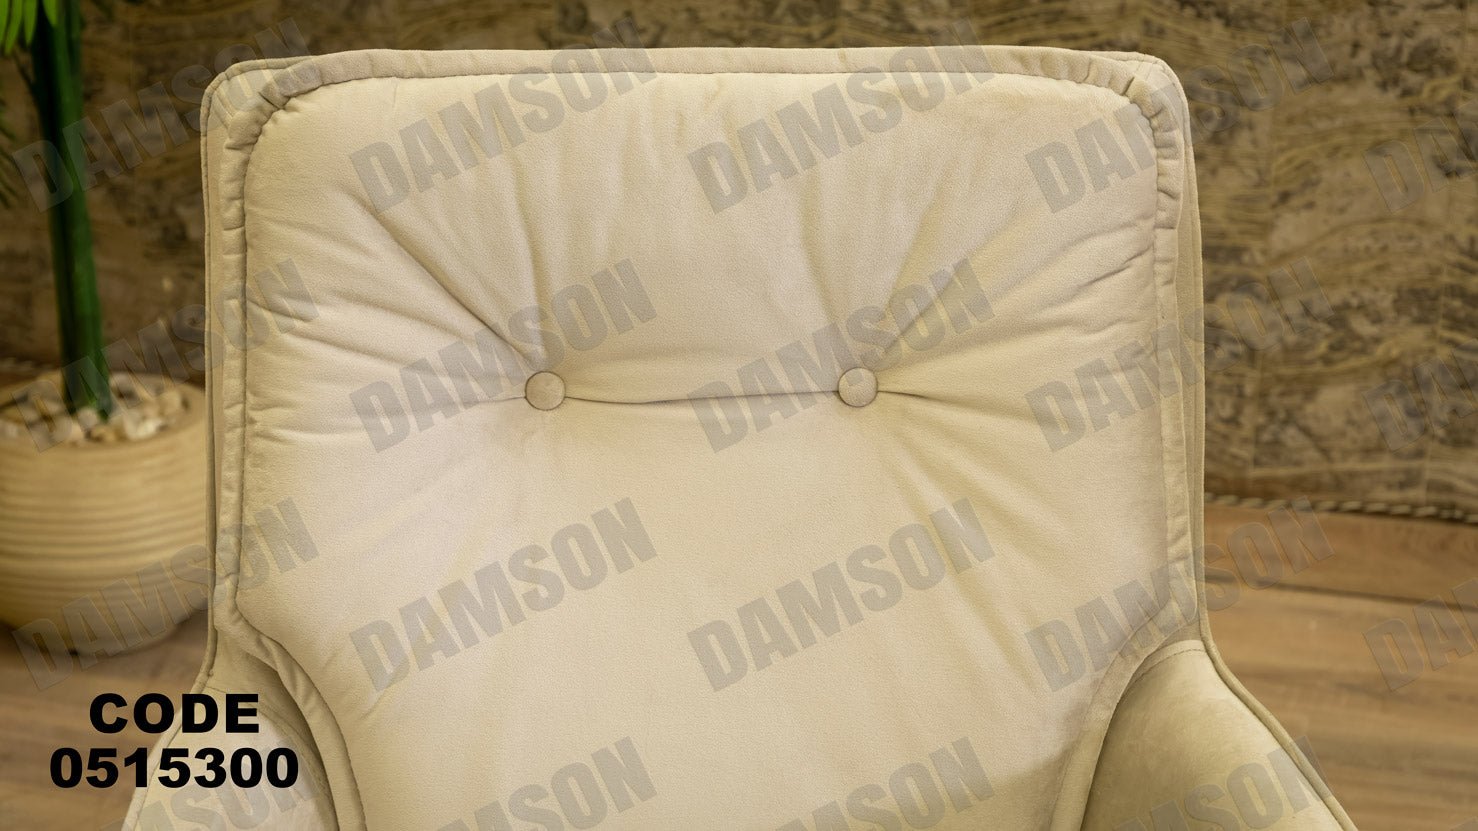 انترية سرير 153 - Damson Furnitureانترية سرير 153